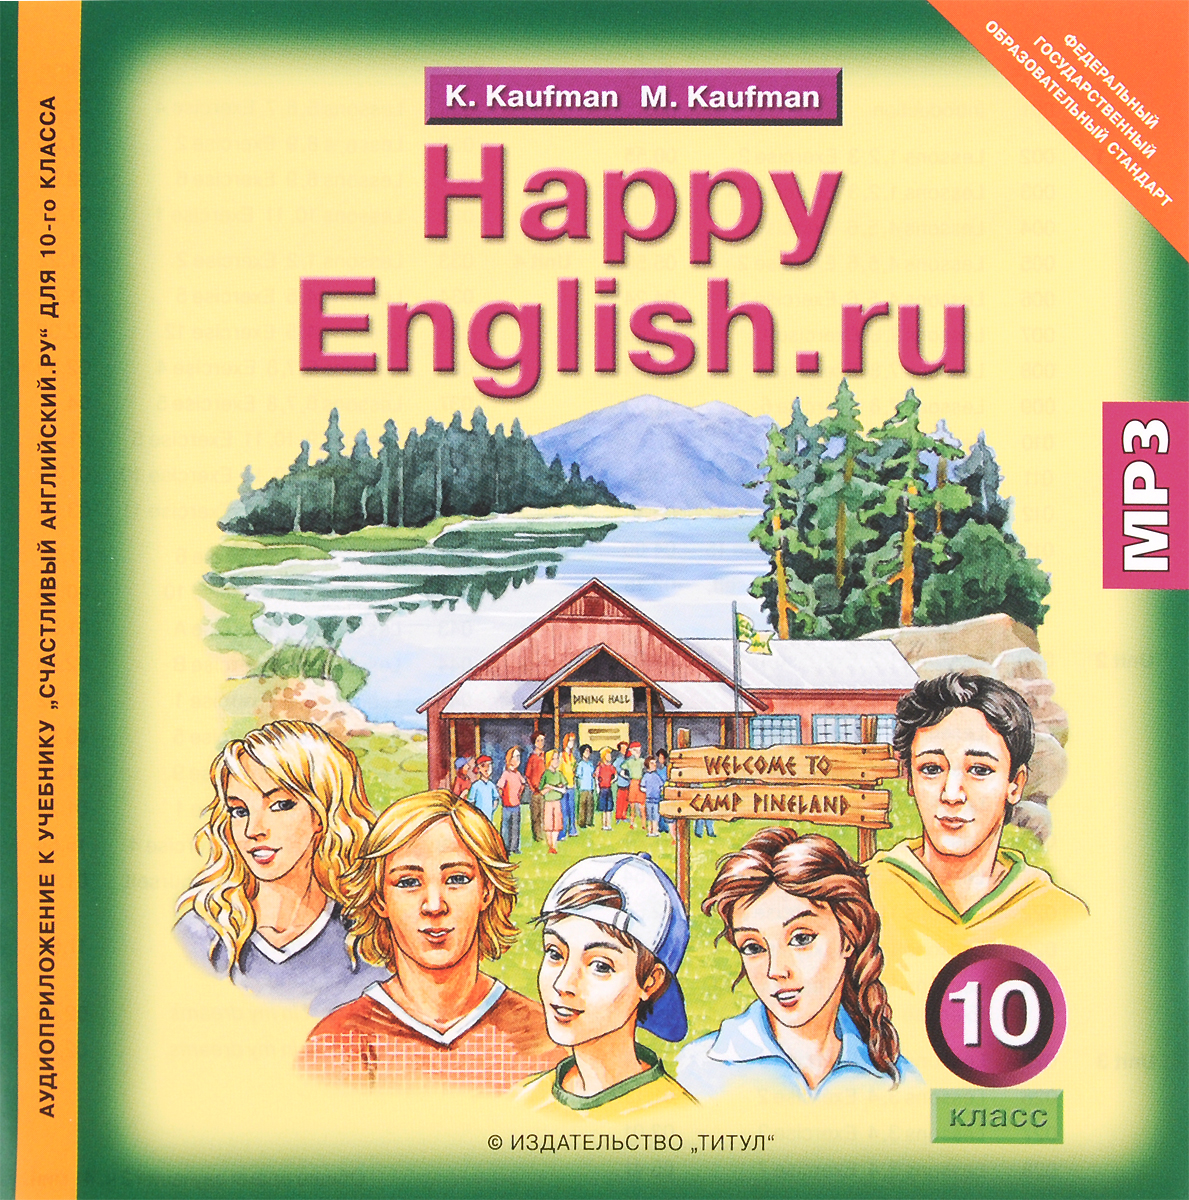 Happy English. ru 10 /Английский язык. 10 класс. Аудиоприложение к учебнику "Счастливый английский" (аудиокурс MP3)